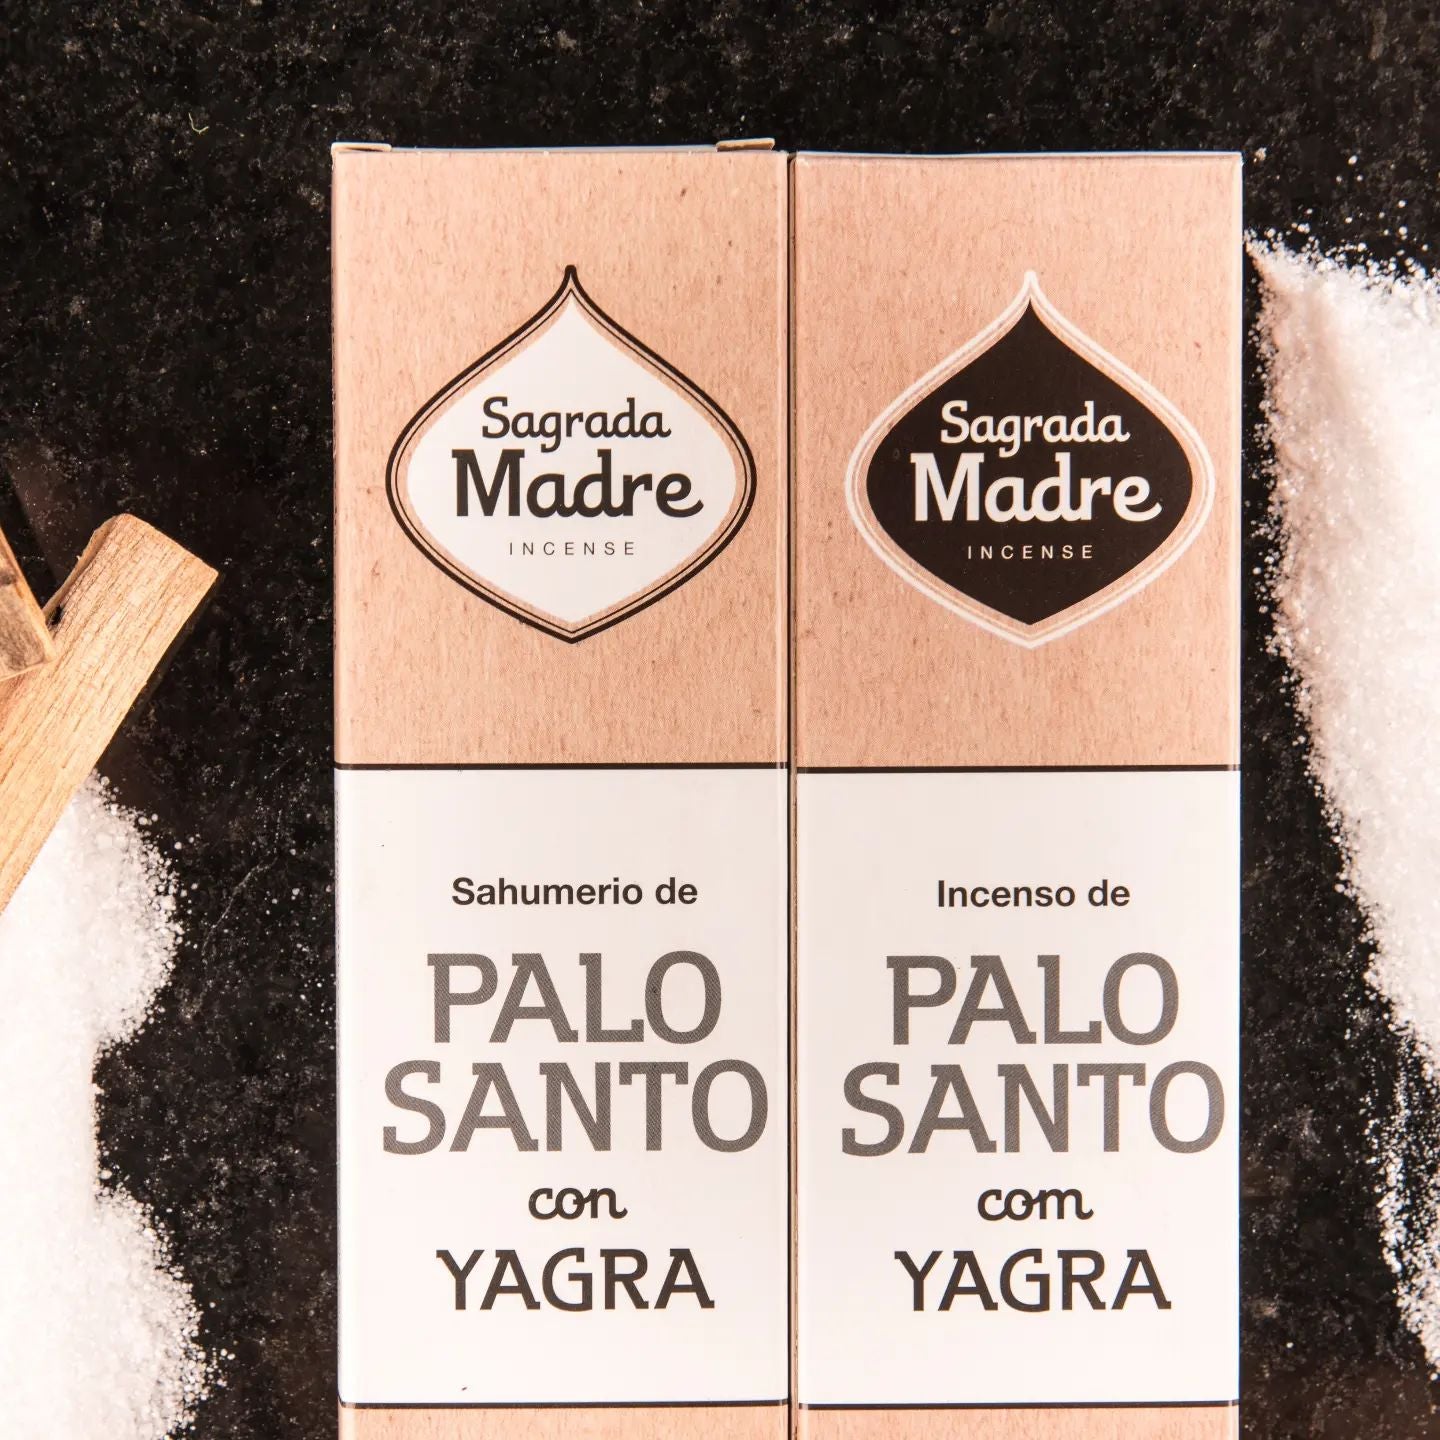 Sahumerio Palo Santo con Yagra - Sagrada Madre